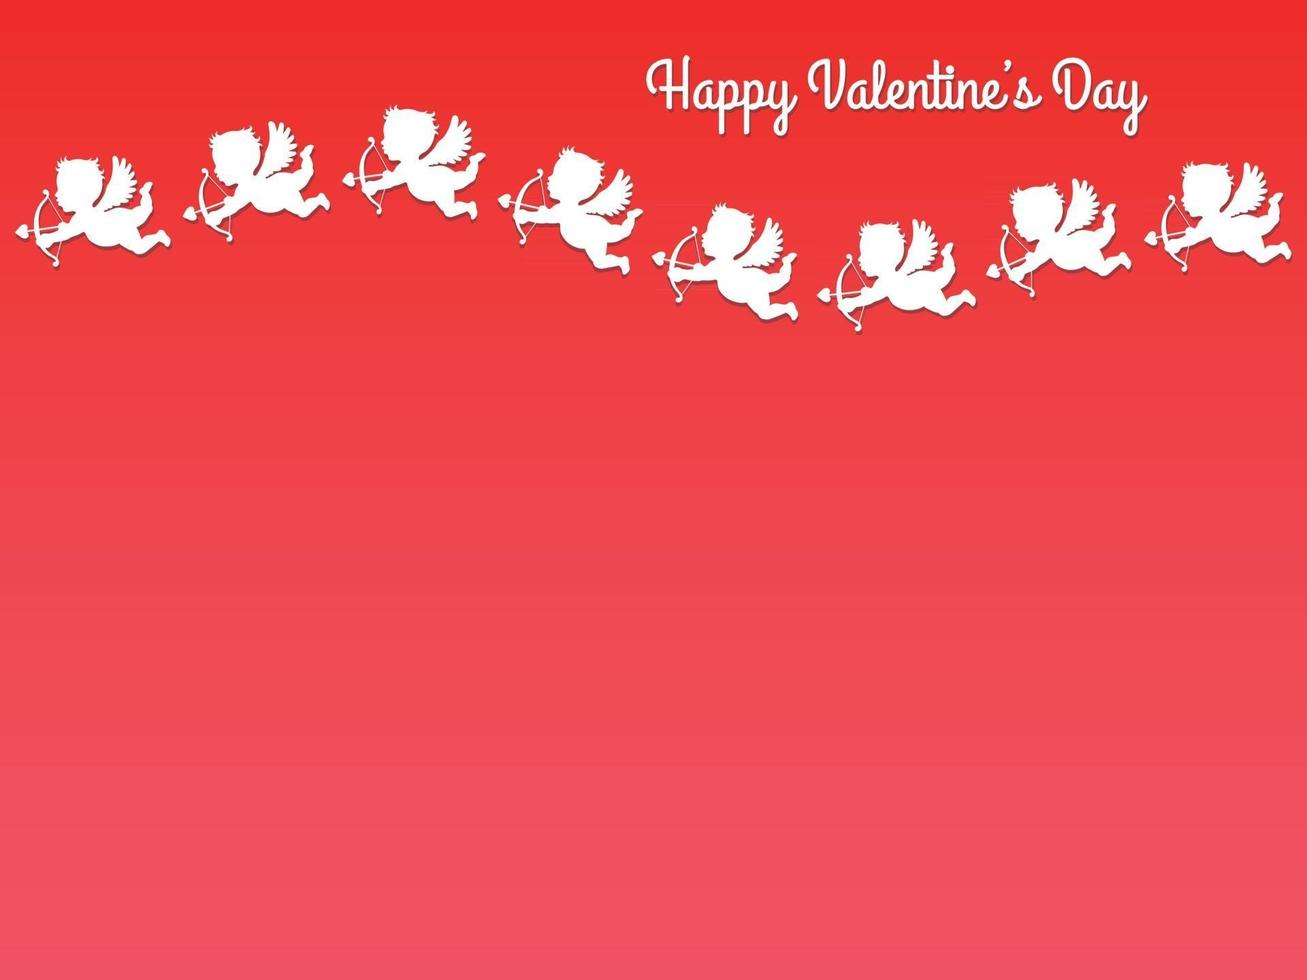 illustration de fond vecteur valentines transparente avec des cupidons blancs volant dans une trajectoire ondulée sur fond rouge